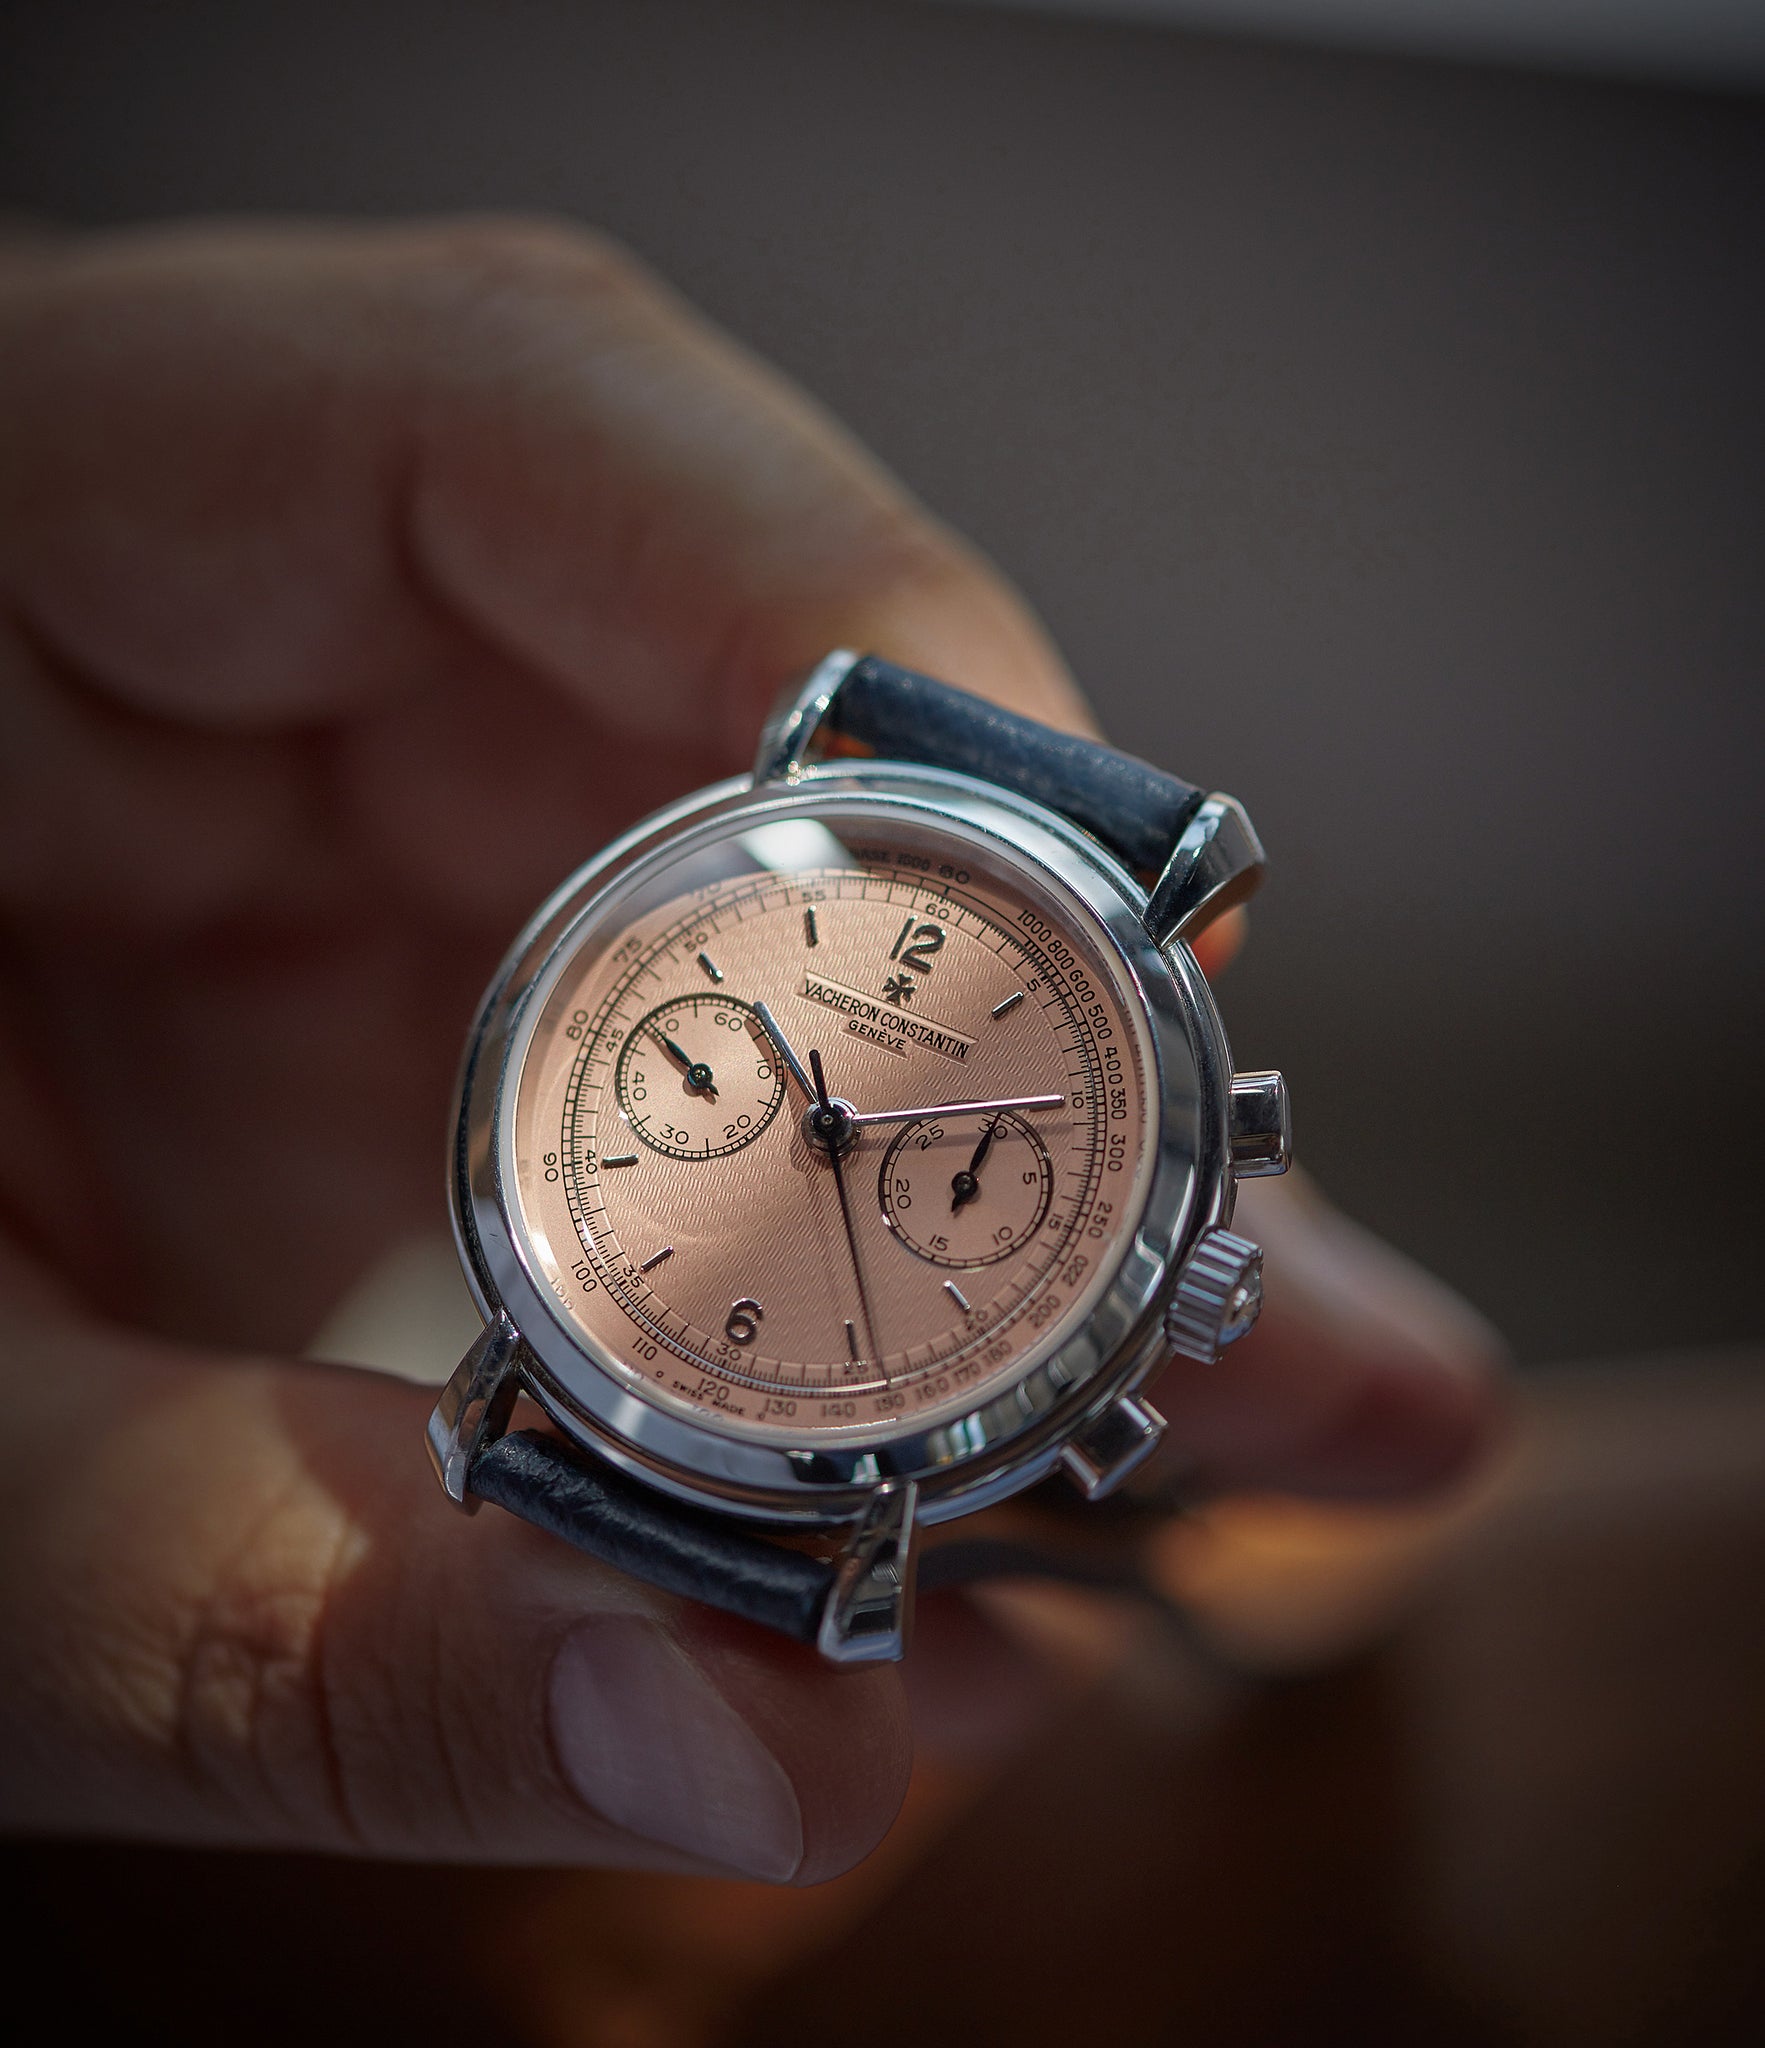 Vacheron Constantin Les Historiques Chronograph 47111/000P platinum salmon dial dress watch for sale online A Collected Man London UK specialist rare watches